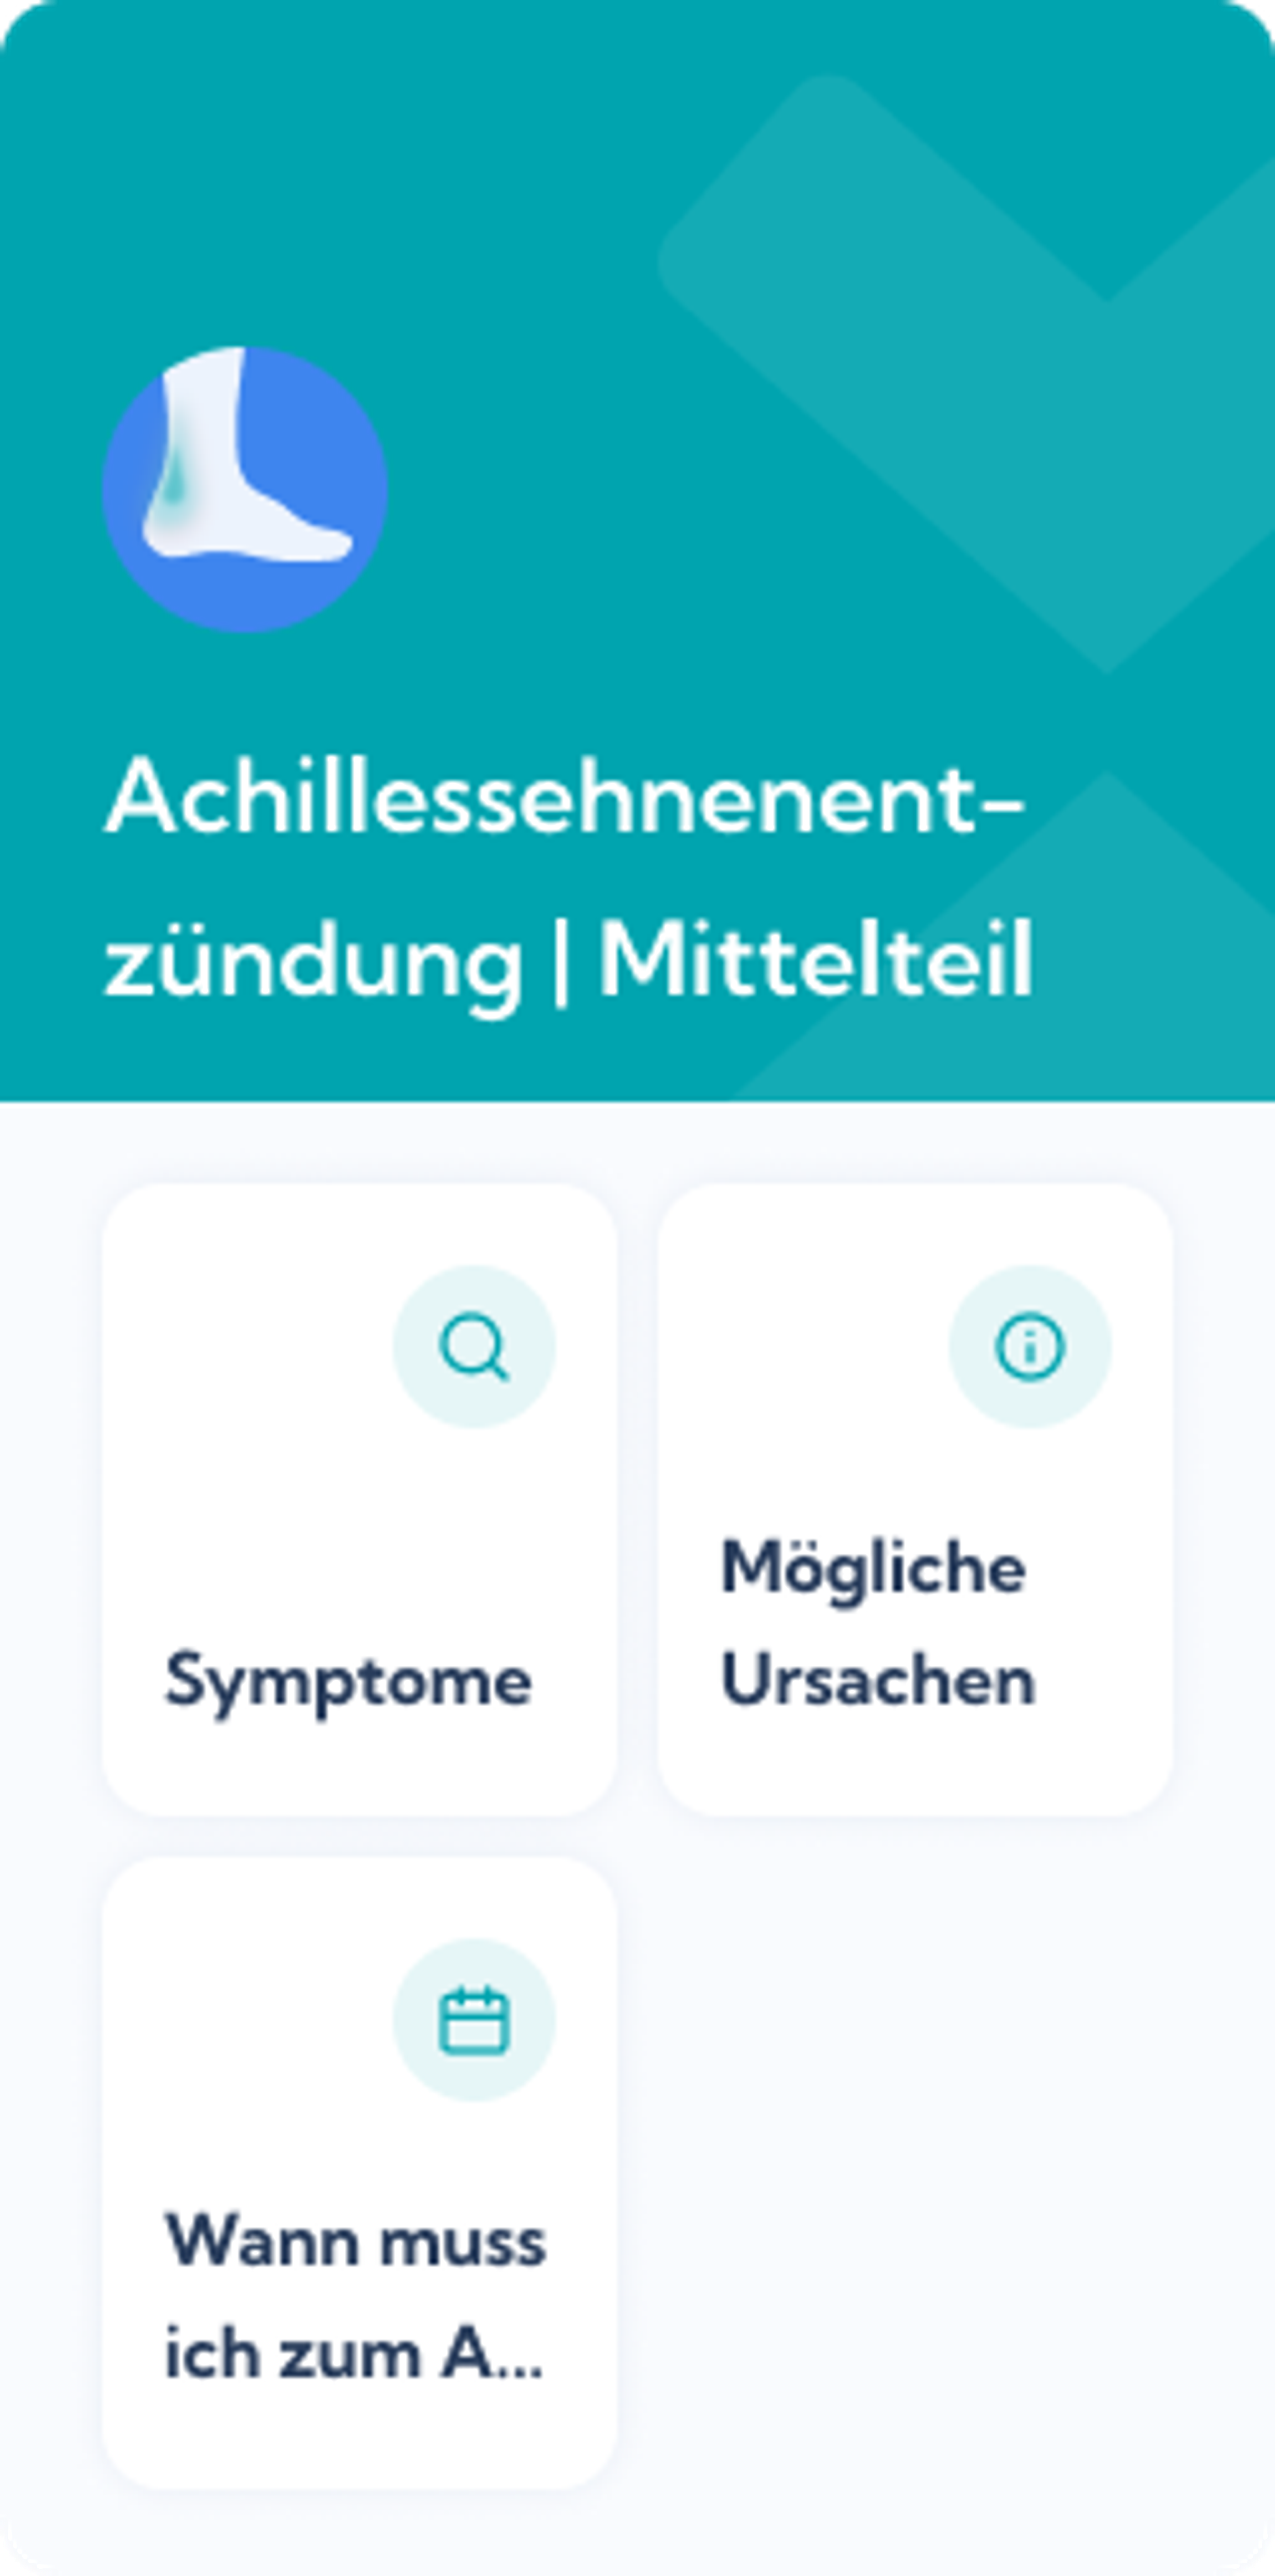  Achillessehnenentzündung (Mittelteil) - Dashboard overview